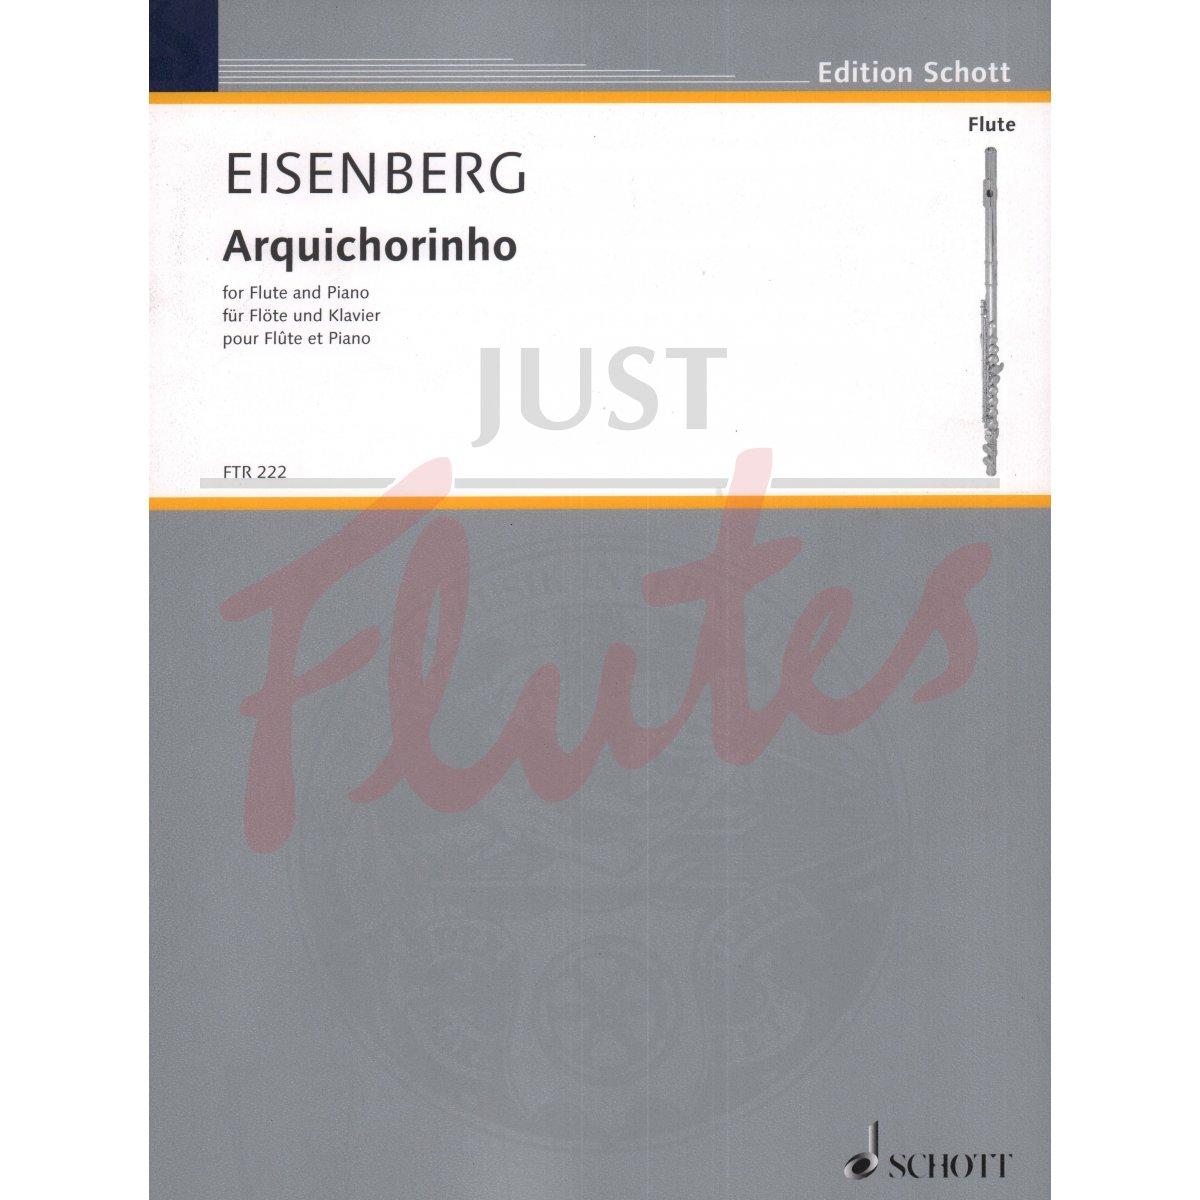 Arquichorinho for Flute and Piano